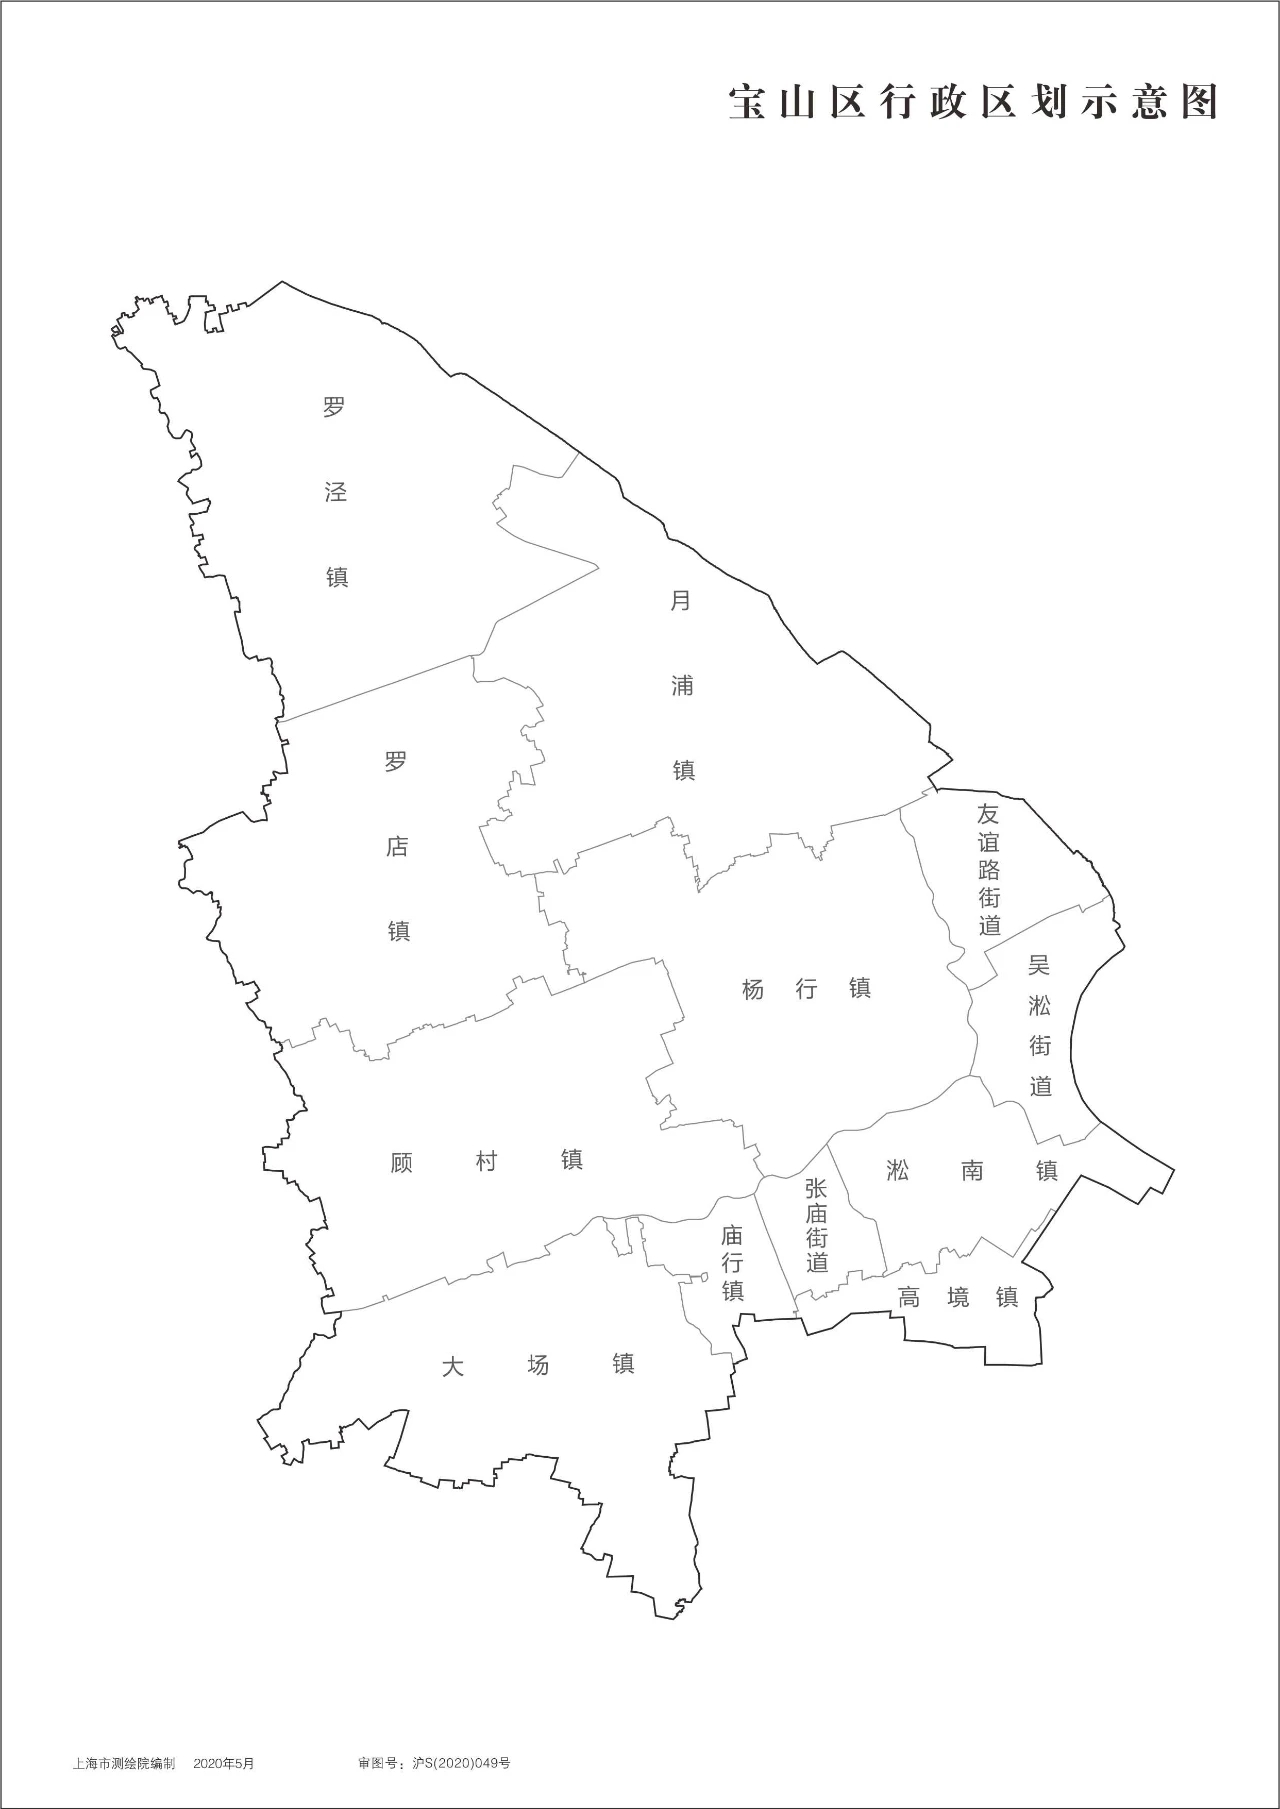 上海16区行政区划图